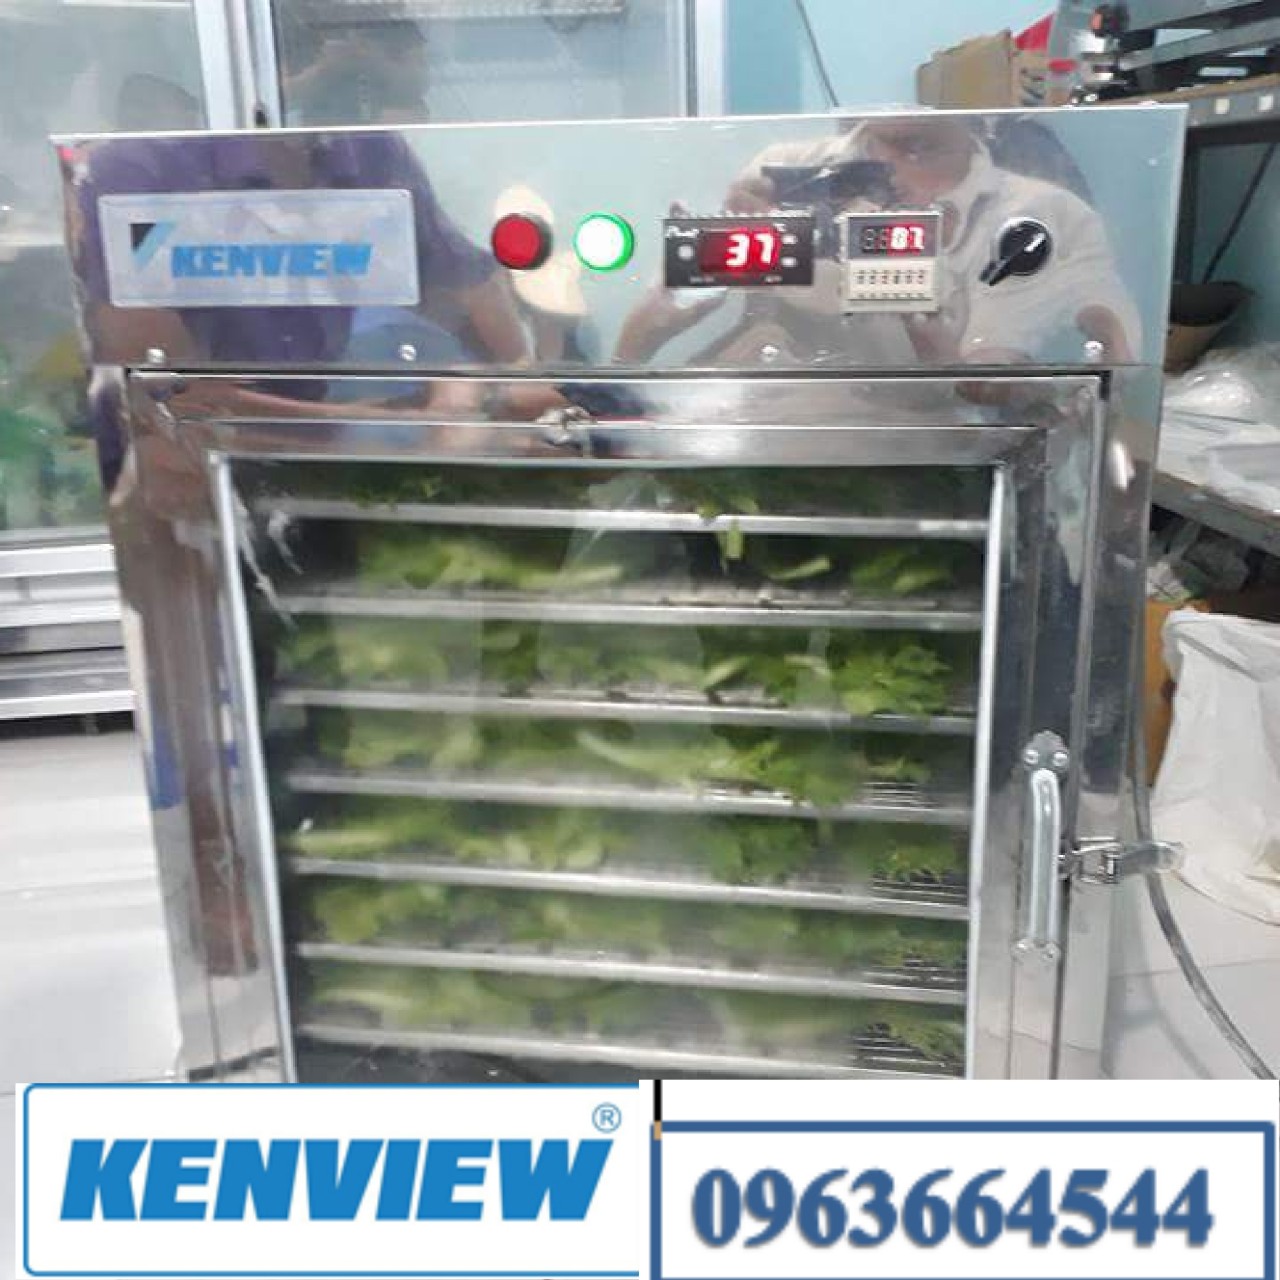 Kenview cung cấp máy sấy thực phẩm ở Quận 12